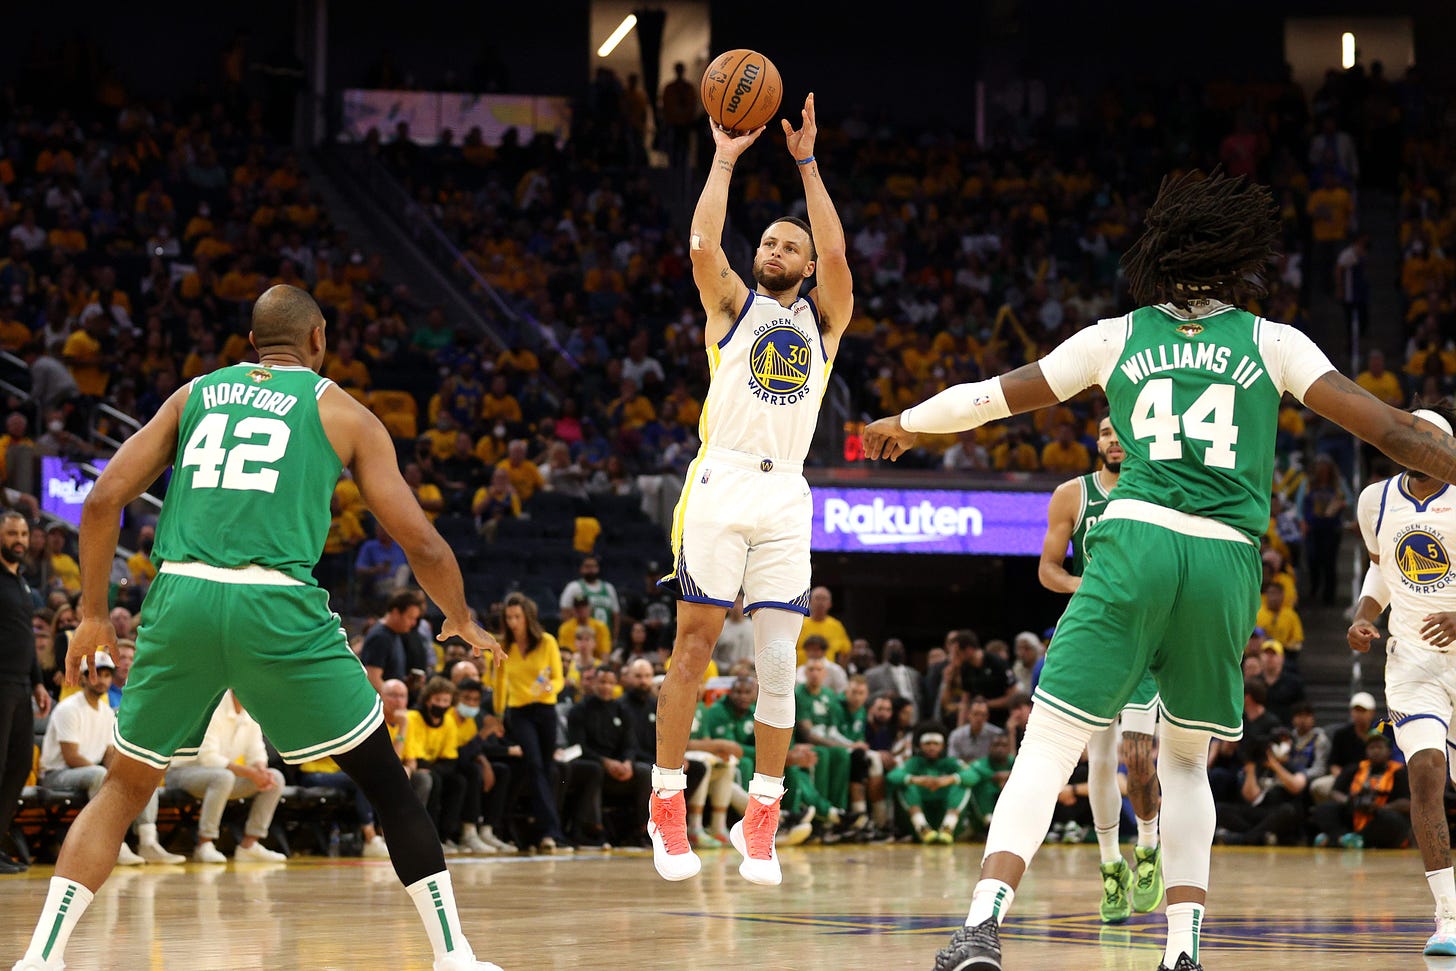 NBA Finals recap: Warriors rout Celtics in Game 2, evens series